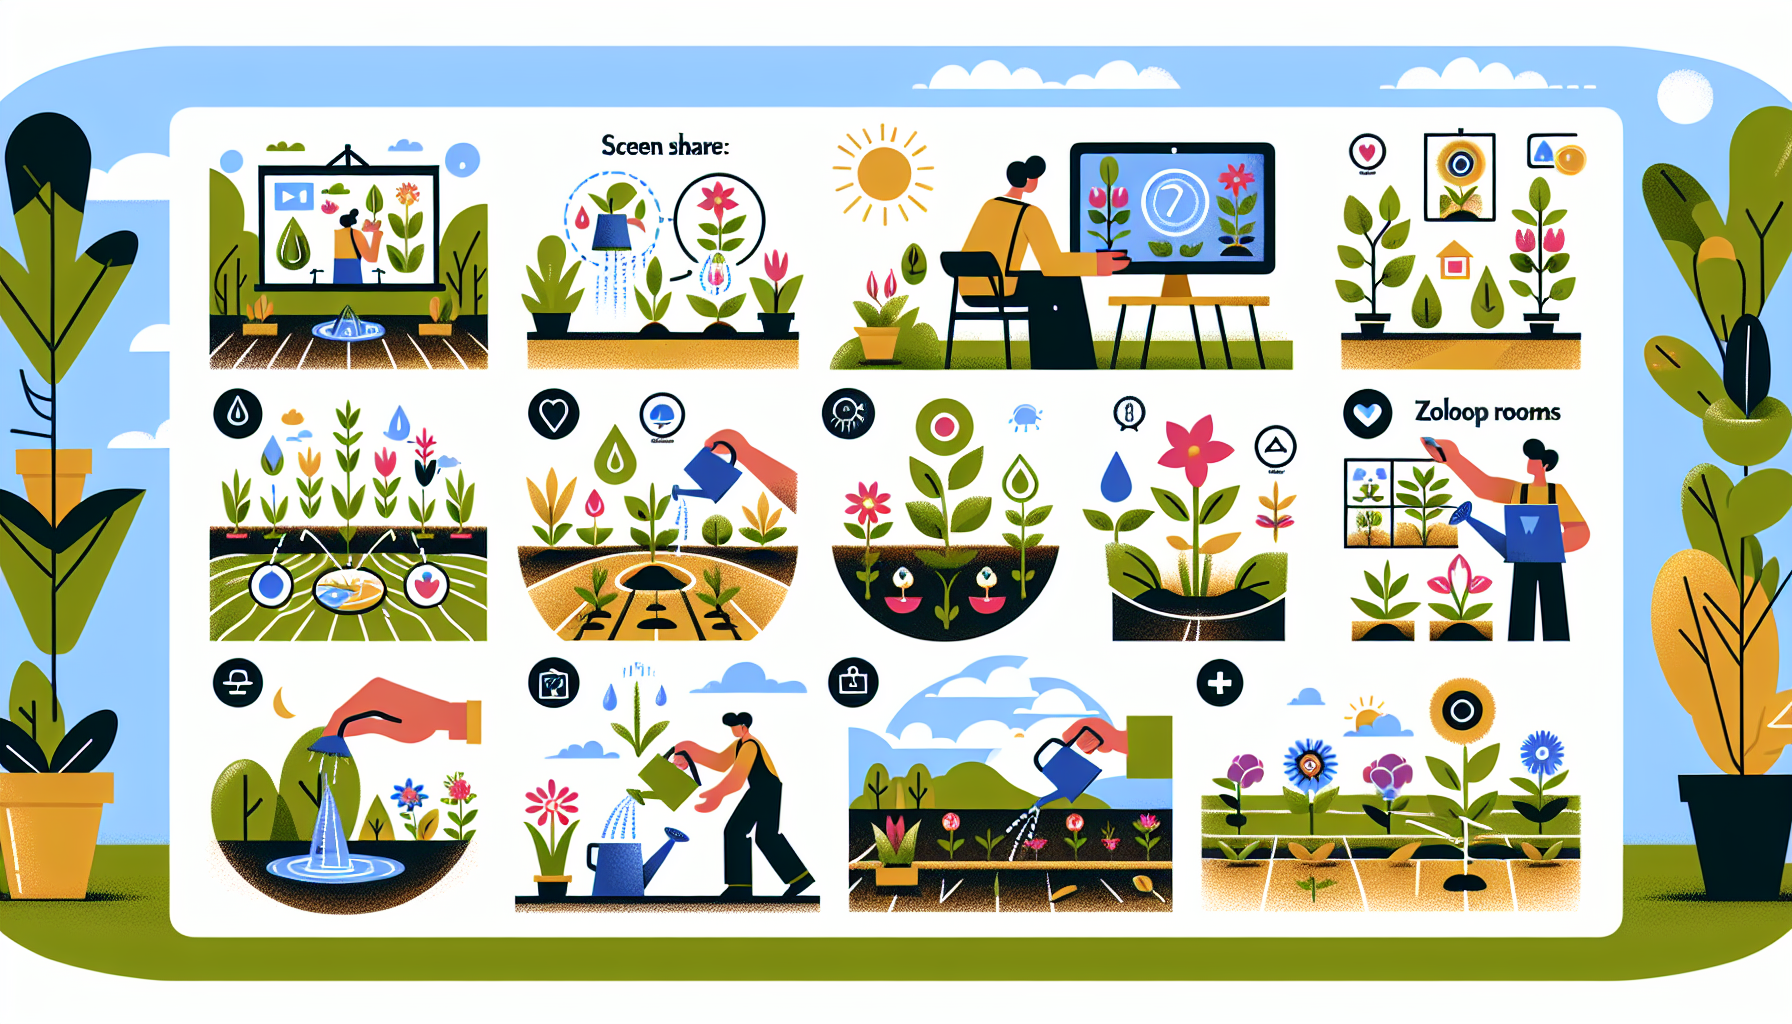 découvrez comment utiliser zoom pour recevoir des conseils de jardinage afin de réussir votre jardin grâce à une expérience virtuelle enrichissante.